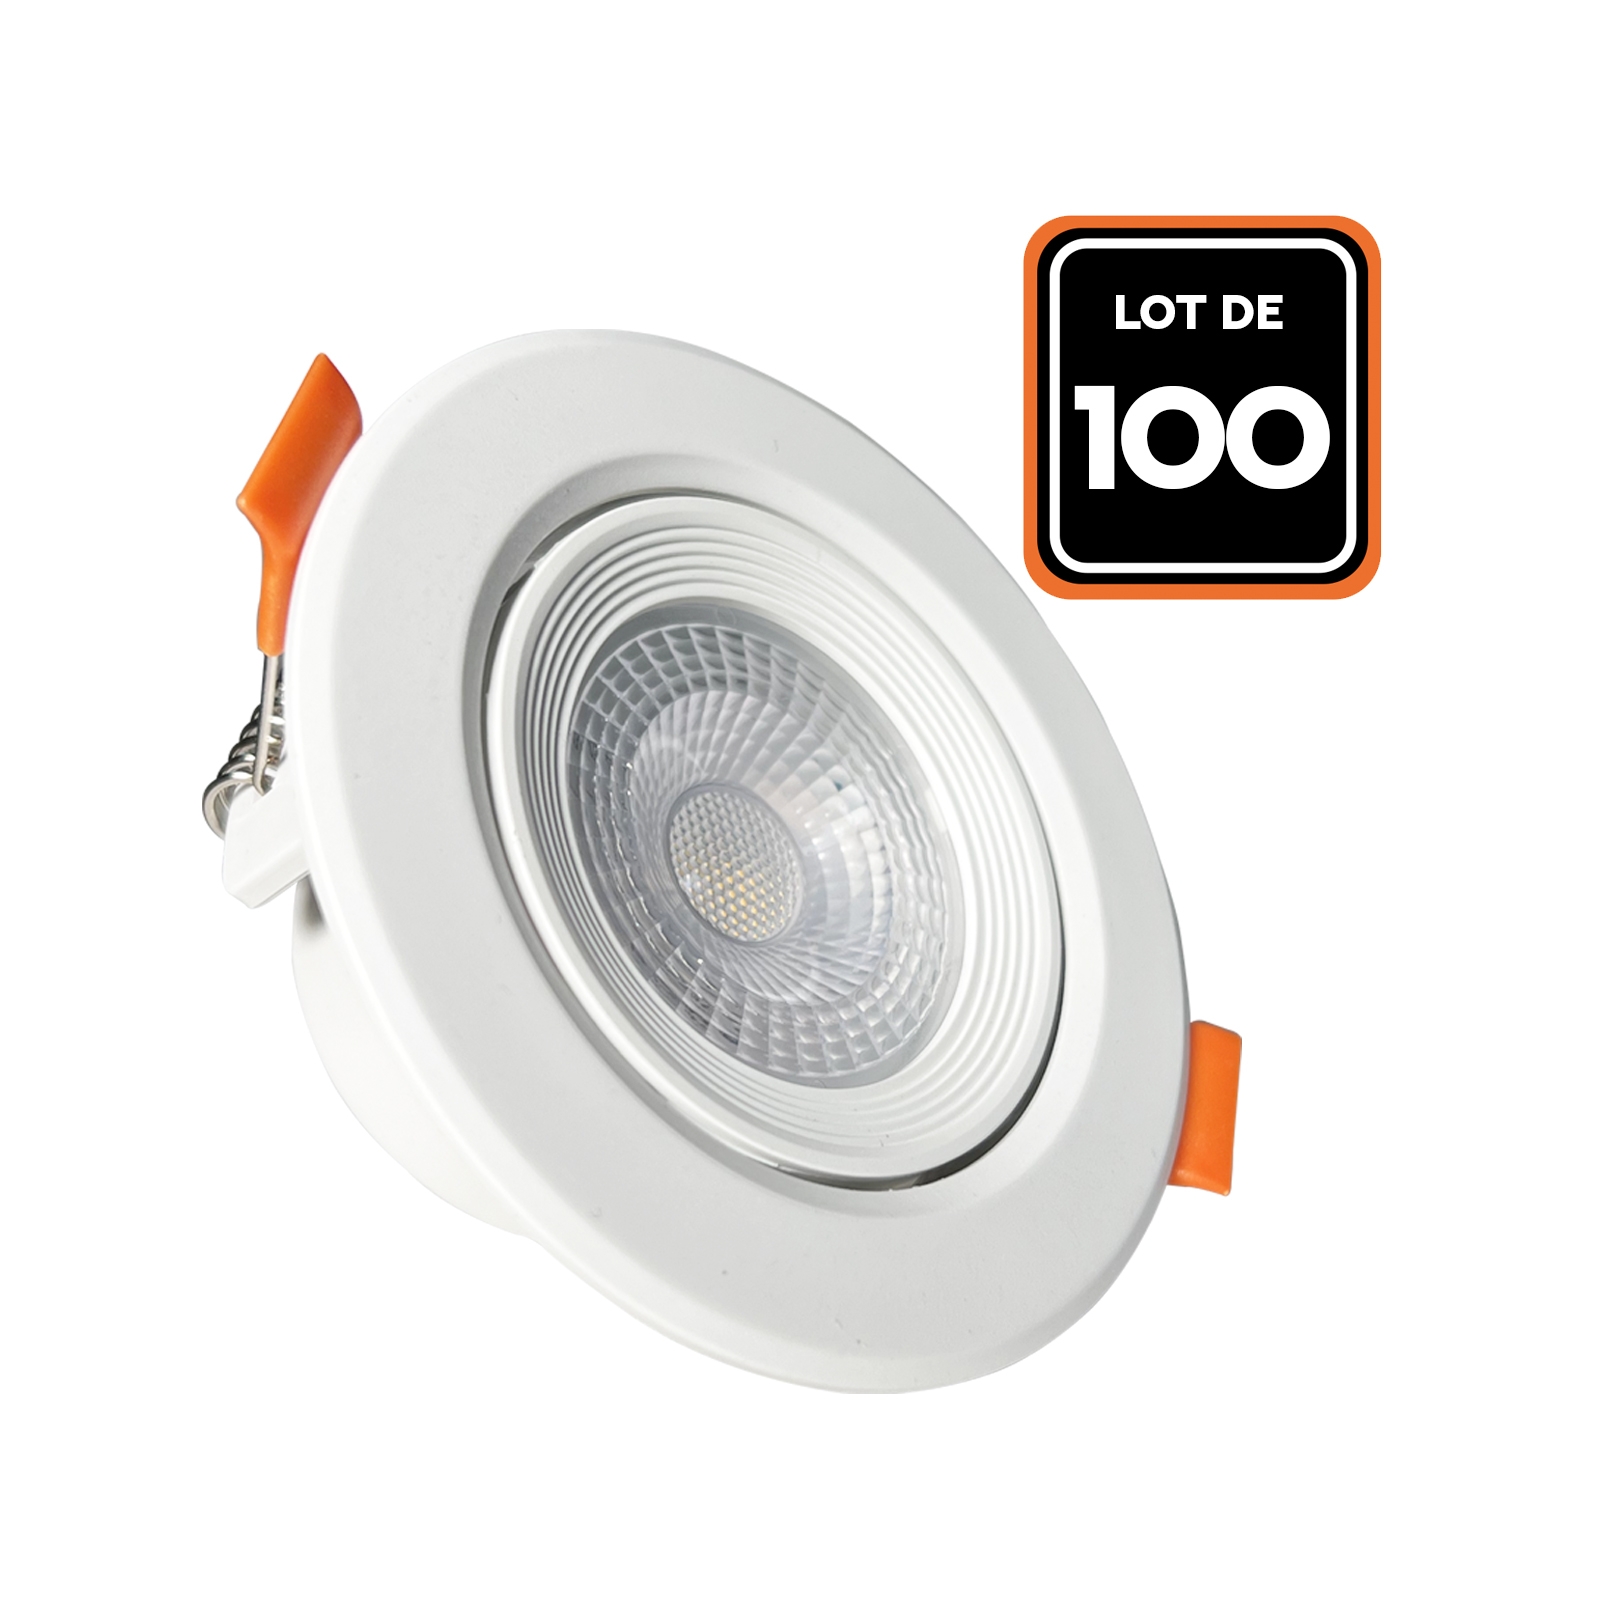 Lot de 100 Spot LED Encastrable Rond 5W - Blanc Neutre 4000K